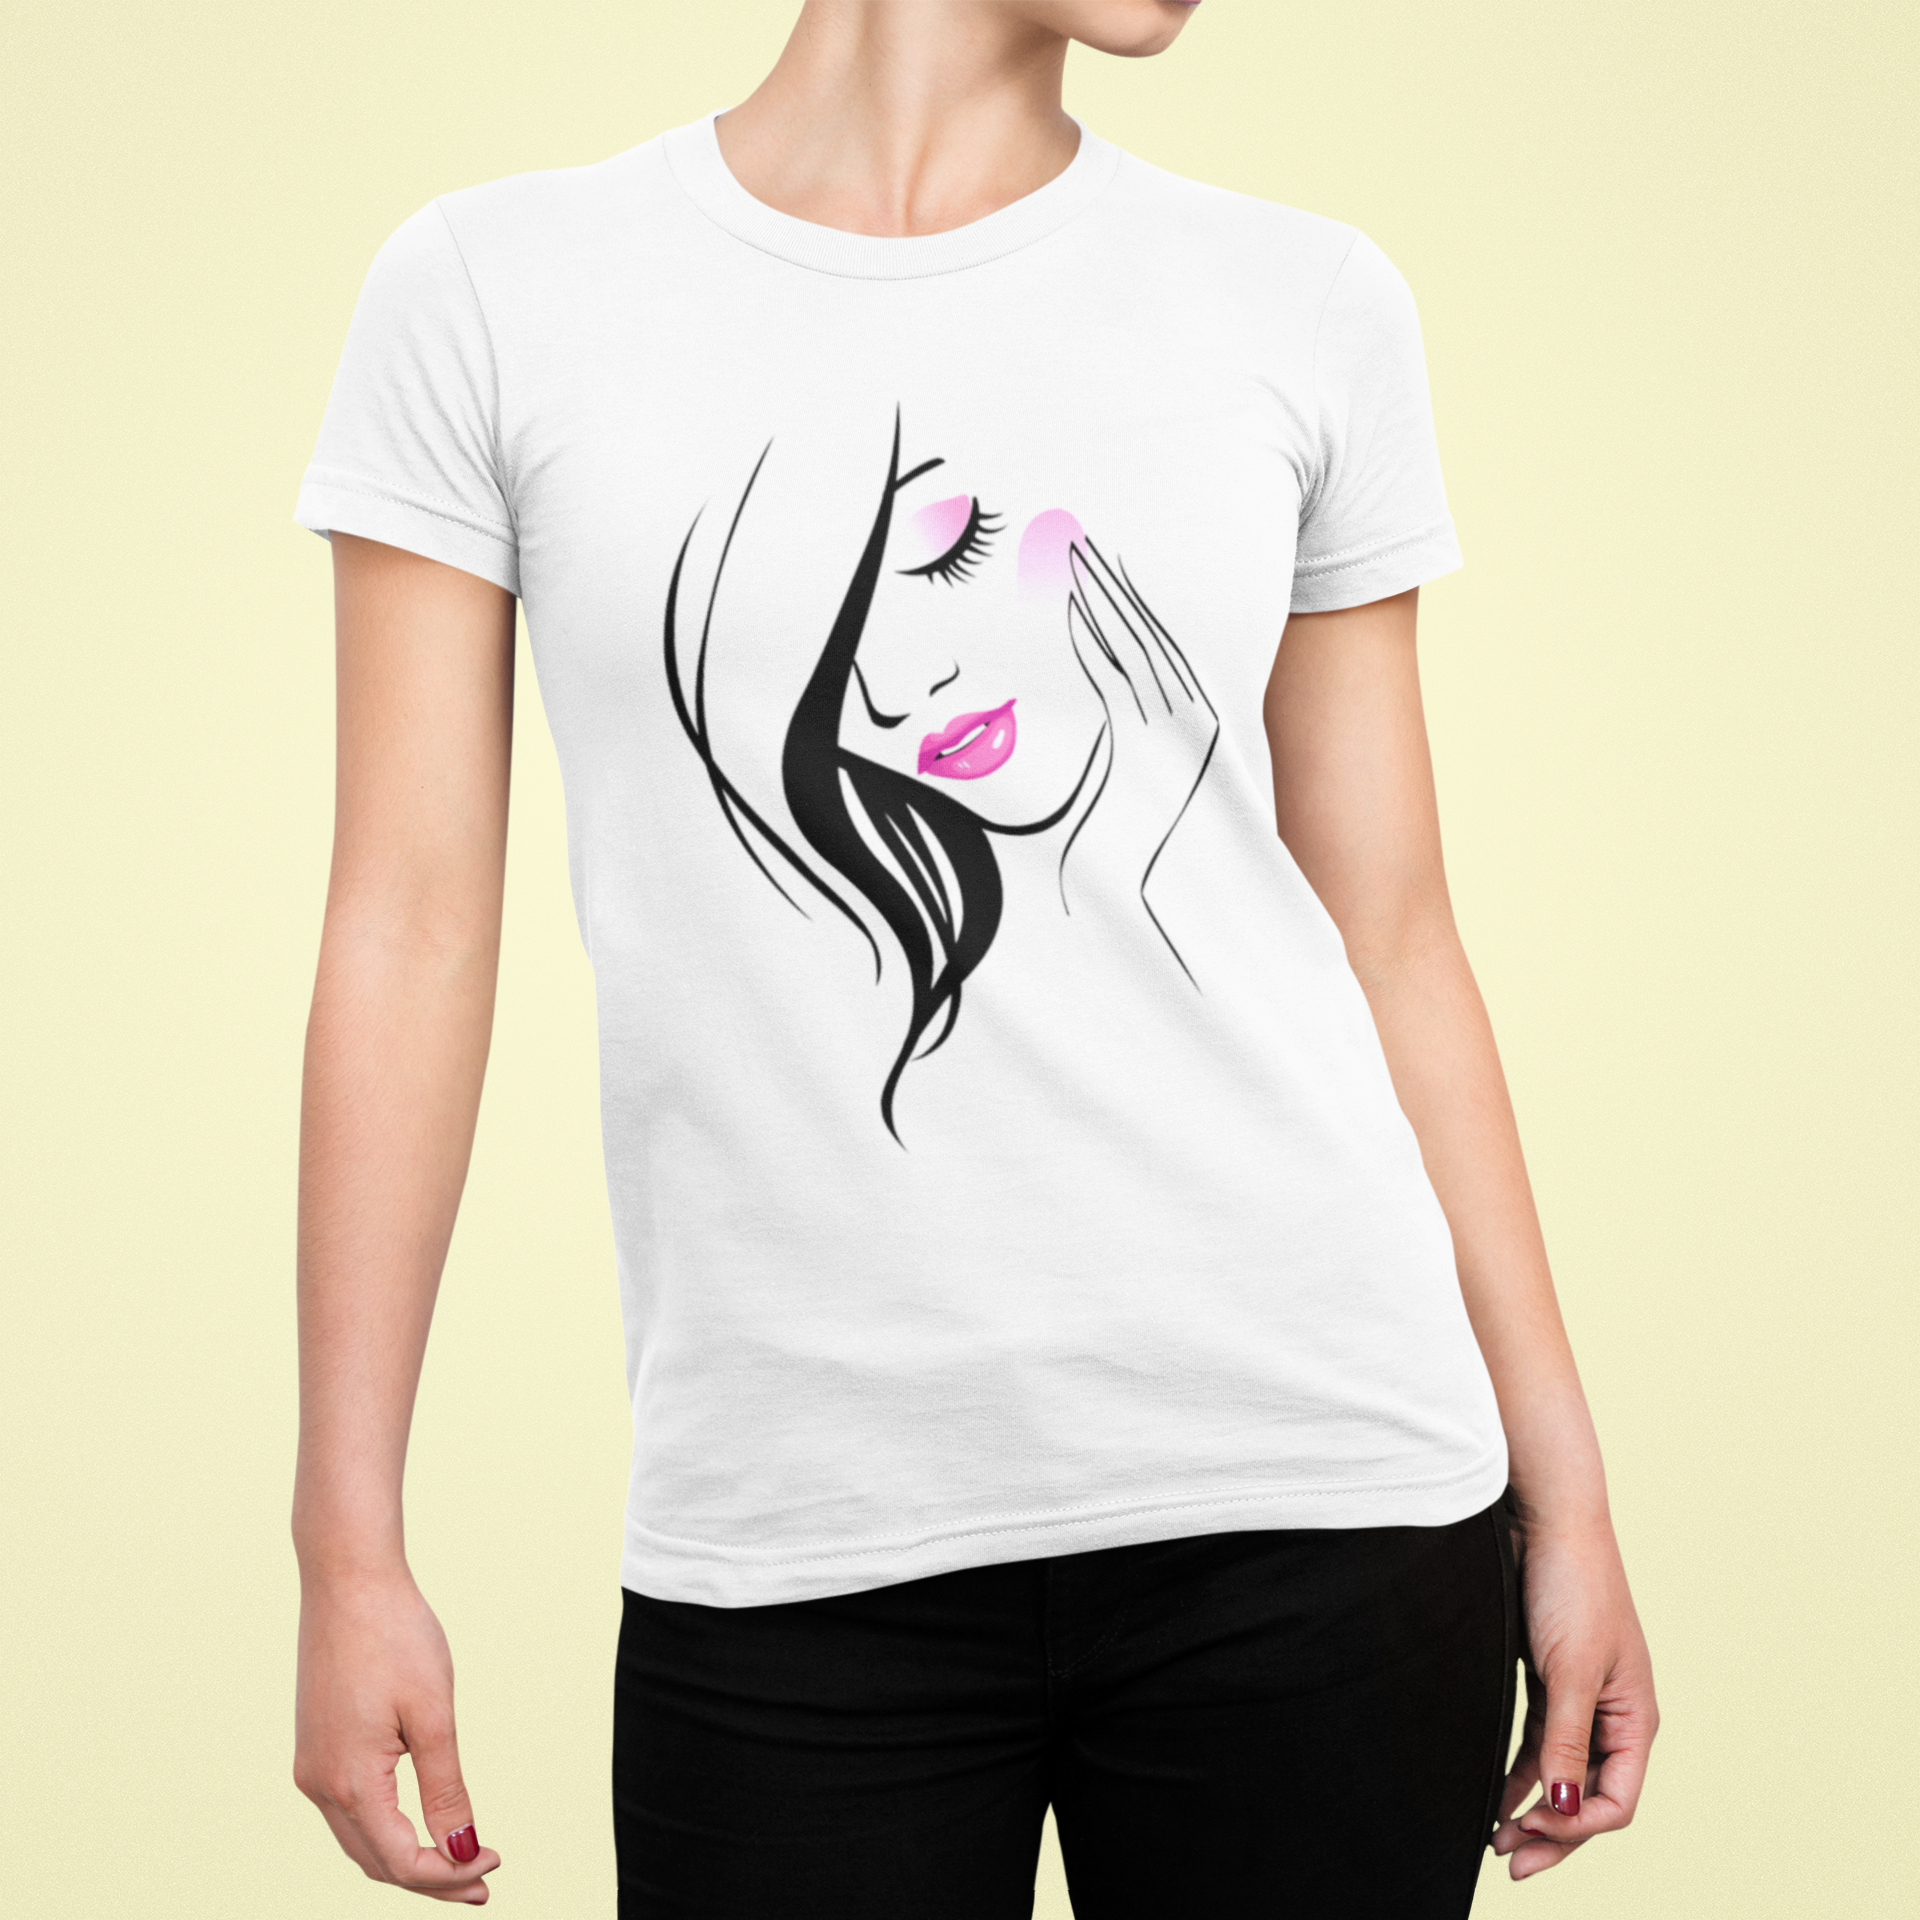 Women's T-shirt with a beautiful women's print